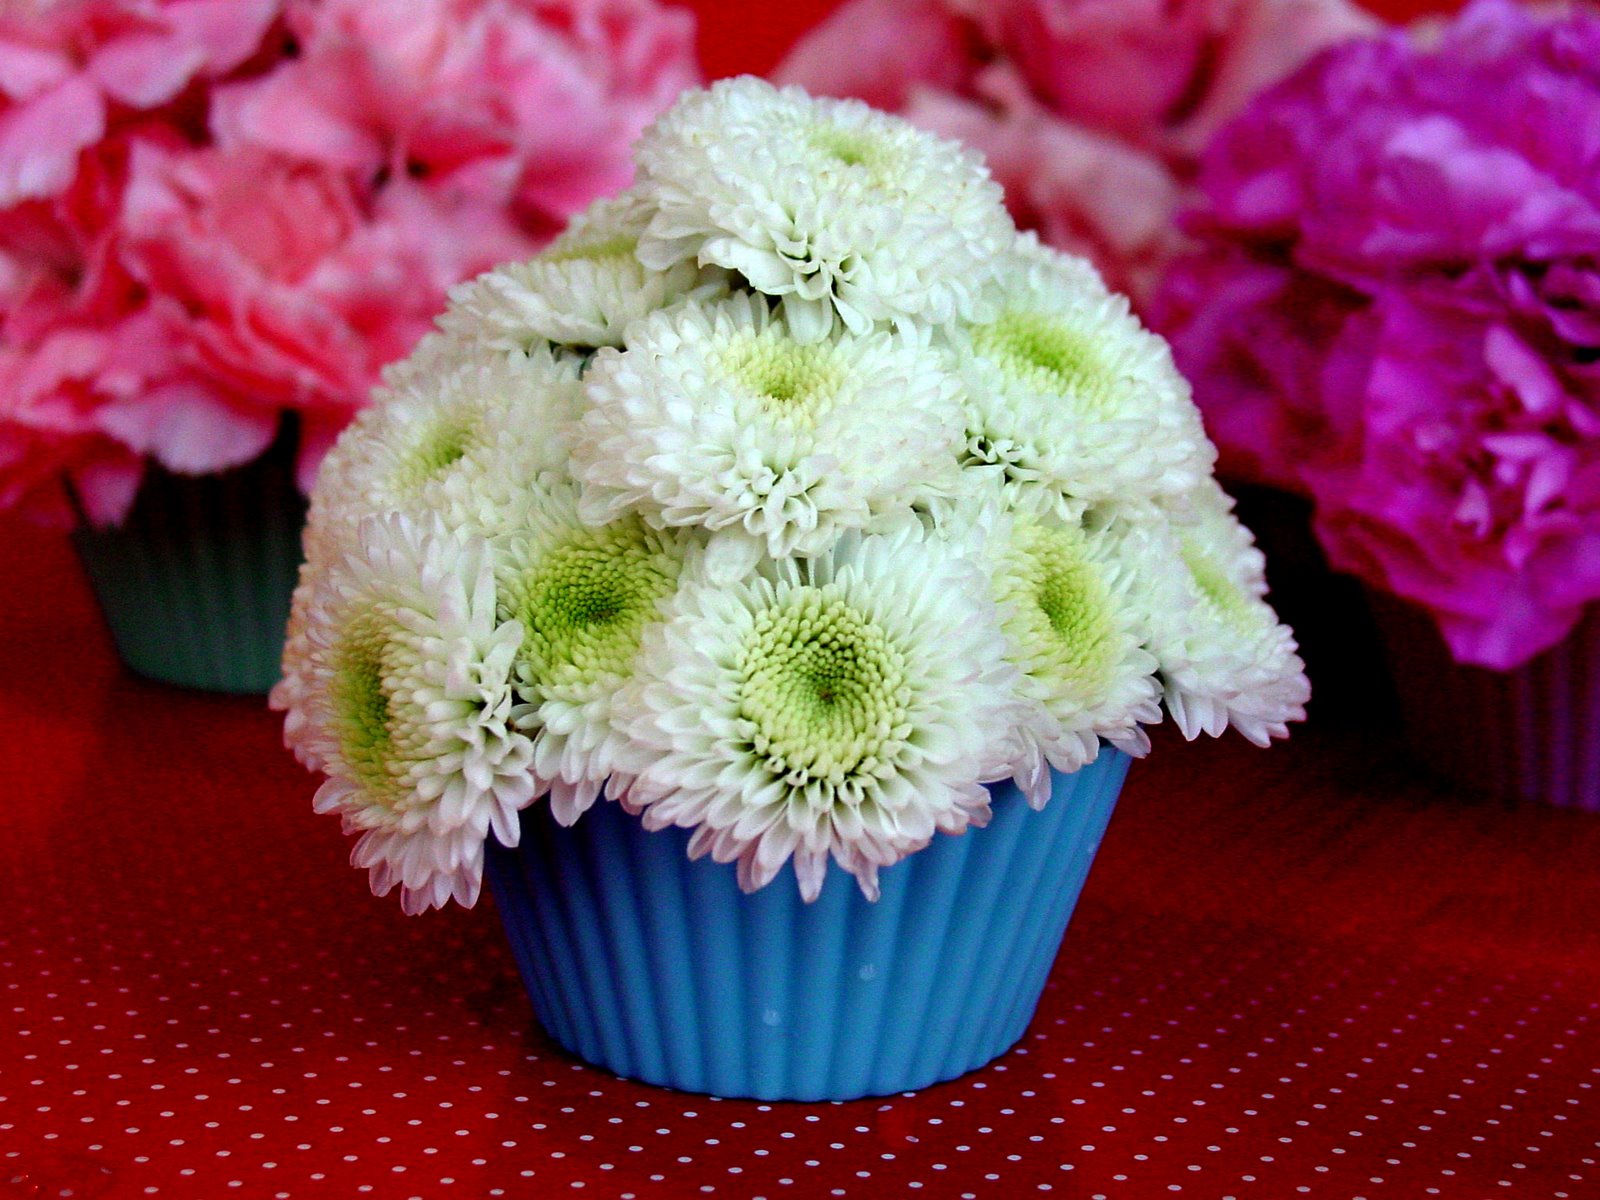 Cắm hoa hình Cupcake đáng yêu